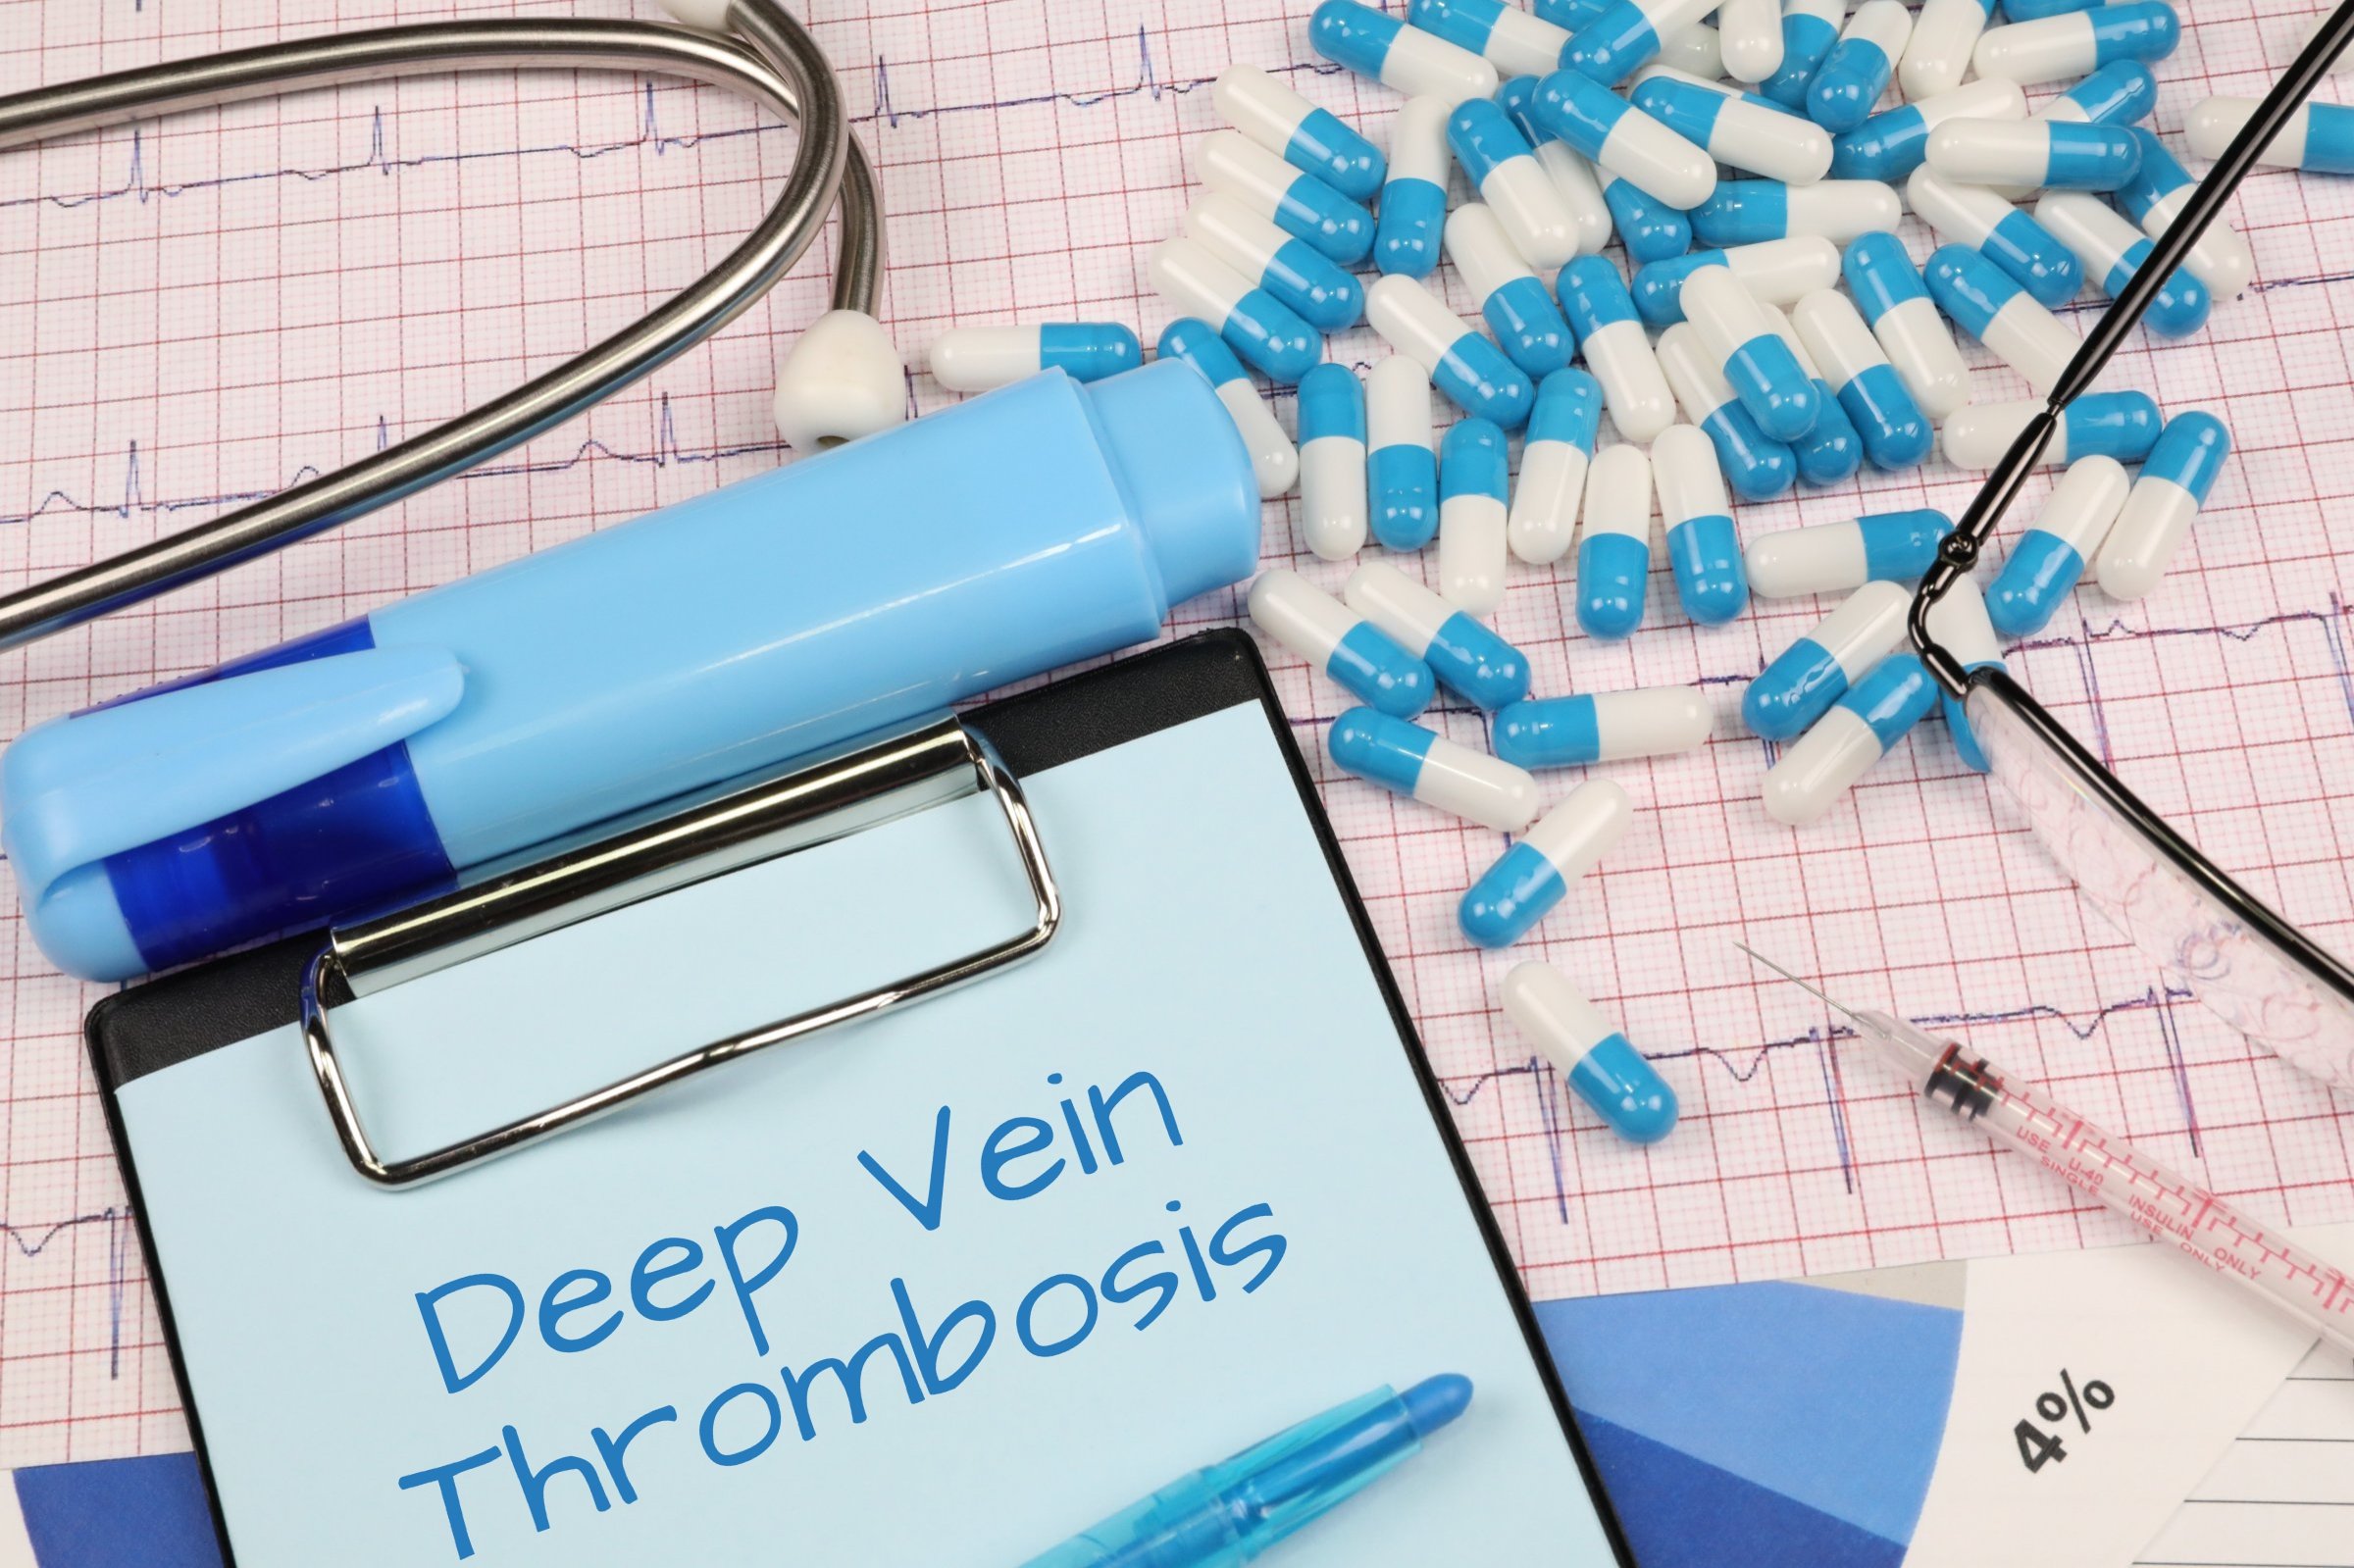 deep vein thrombosis